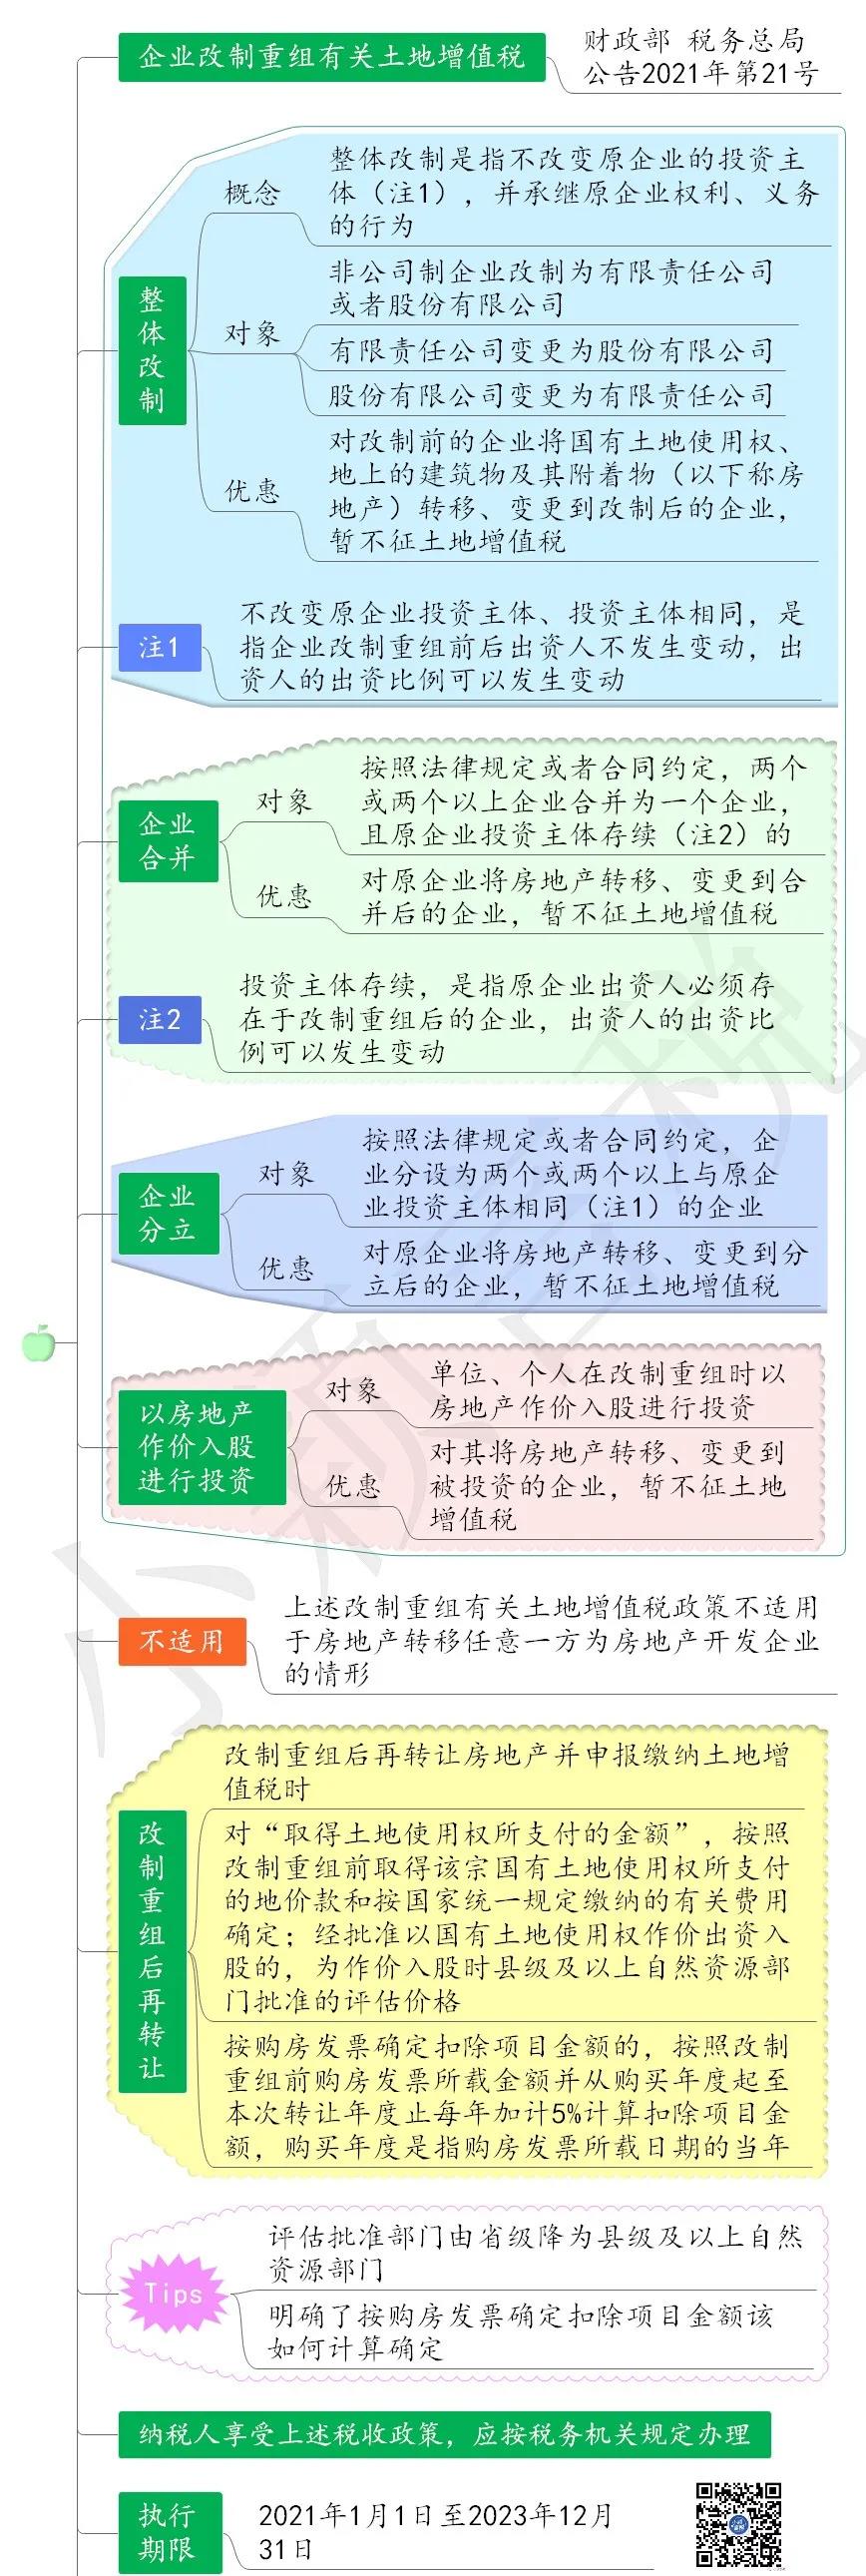 21号公告重组改制土增税政策思维导图.jpg